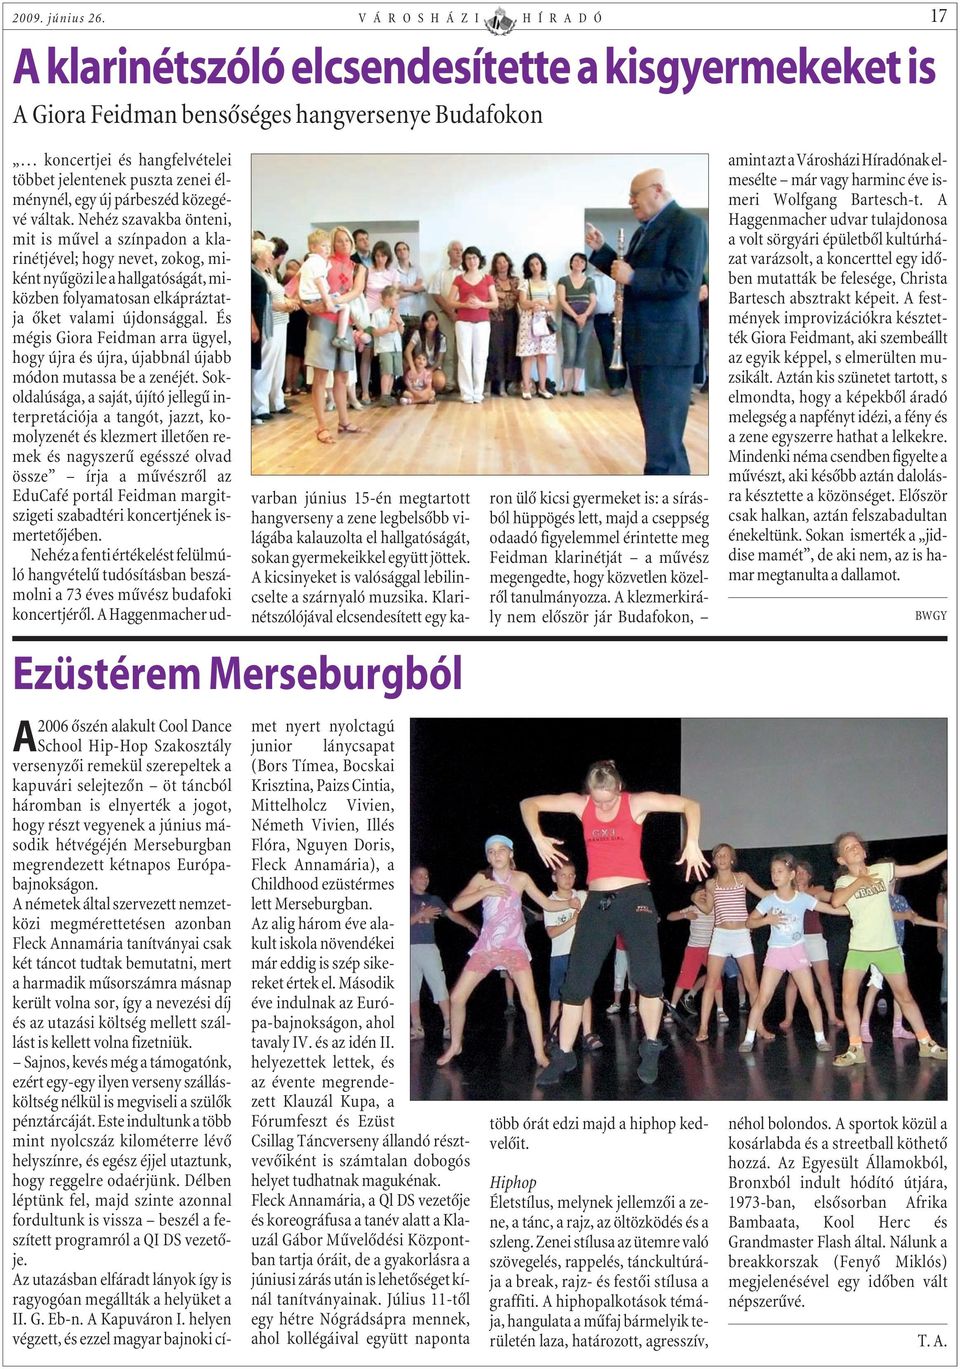 Hip-Hop Szakosztály versenyzõi remekül szerepeltek a kapuvári selejtezõn öt táncból háromban is elnyerték a jogot, hogy részt vegyenek a június második hétvégéjén Merseburgban megrendezett kétnapos